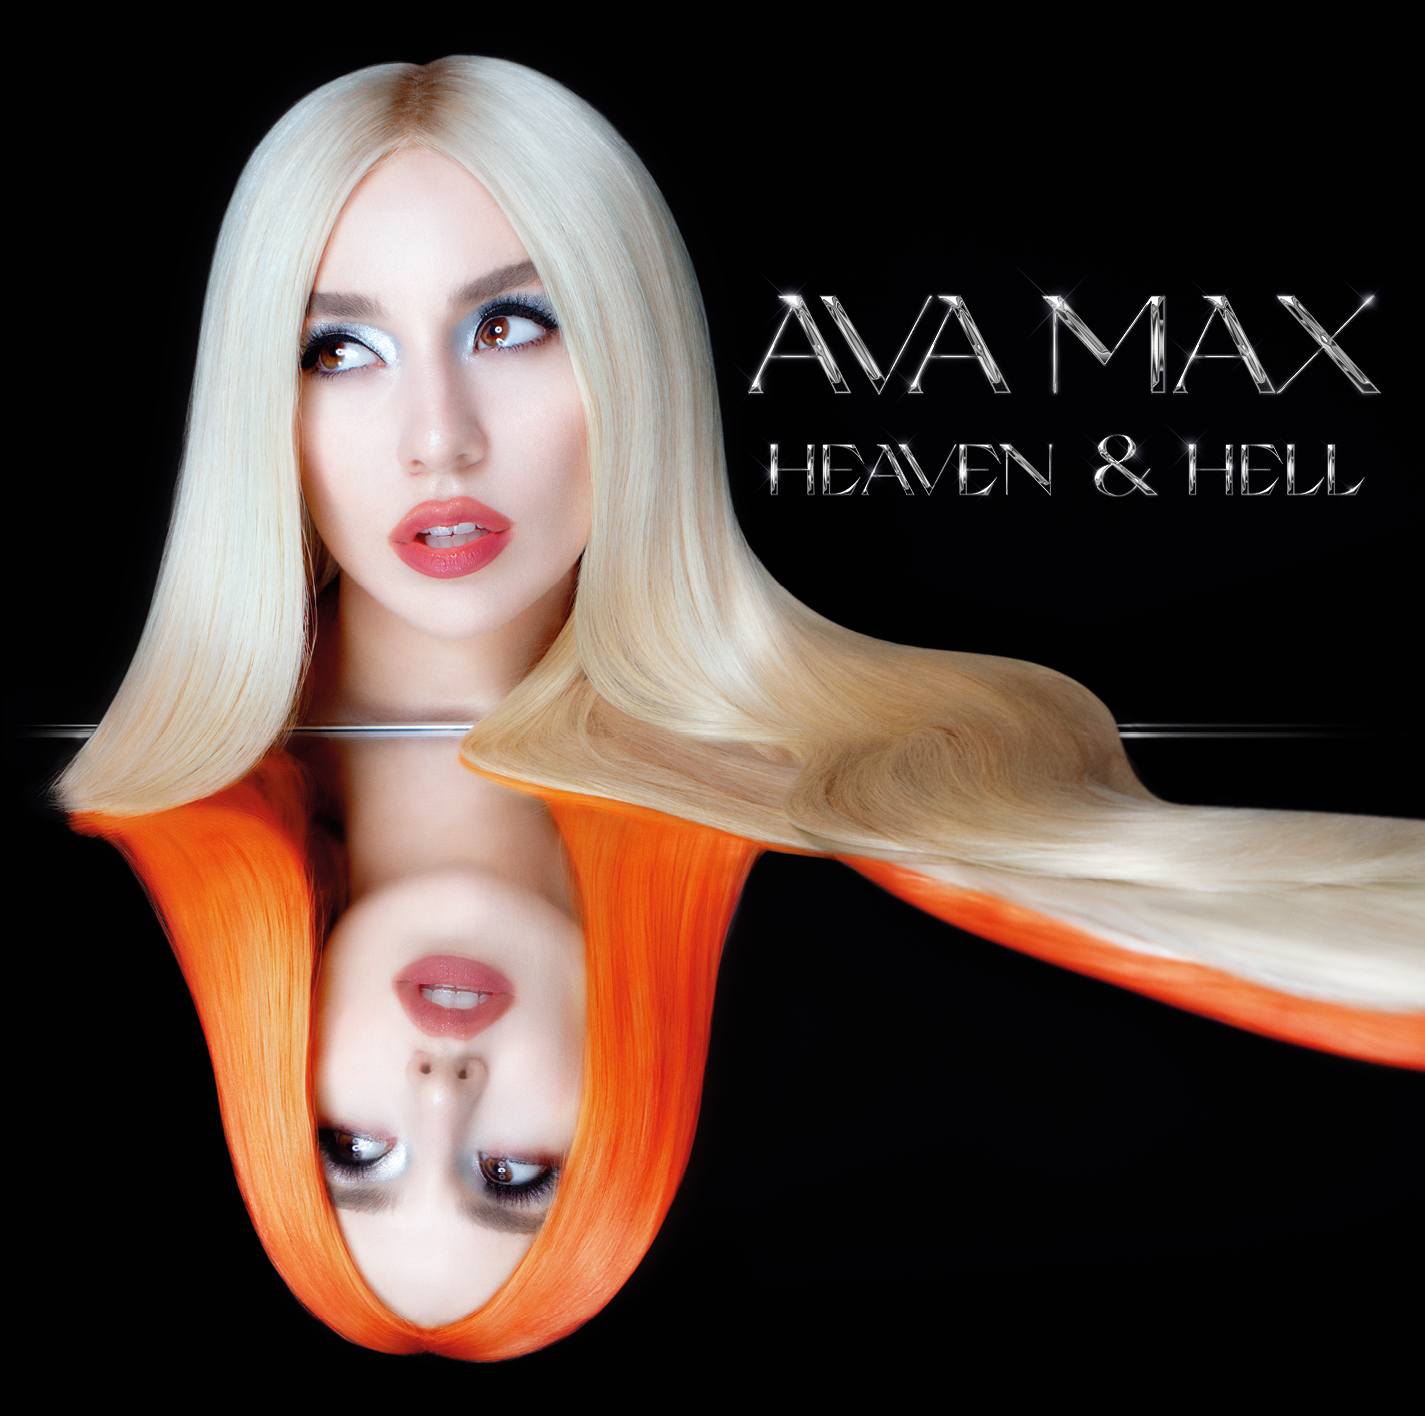 Ava Max “Heaven & Hell”